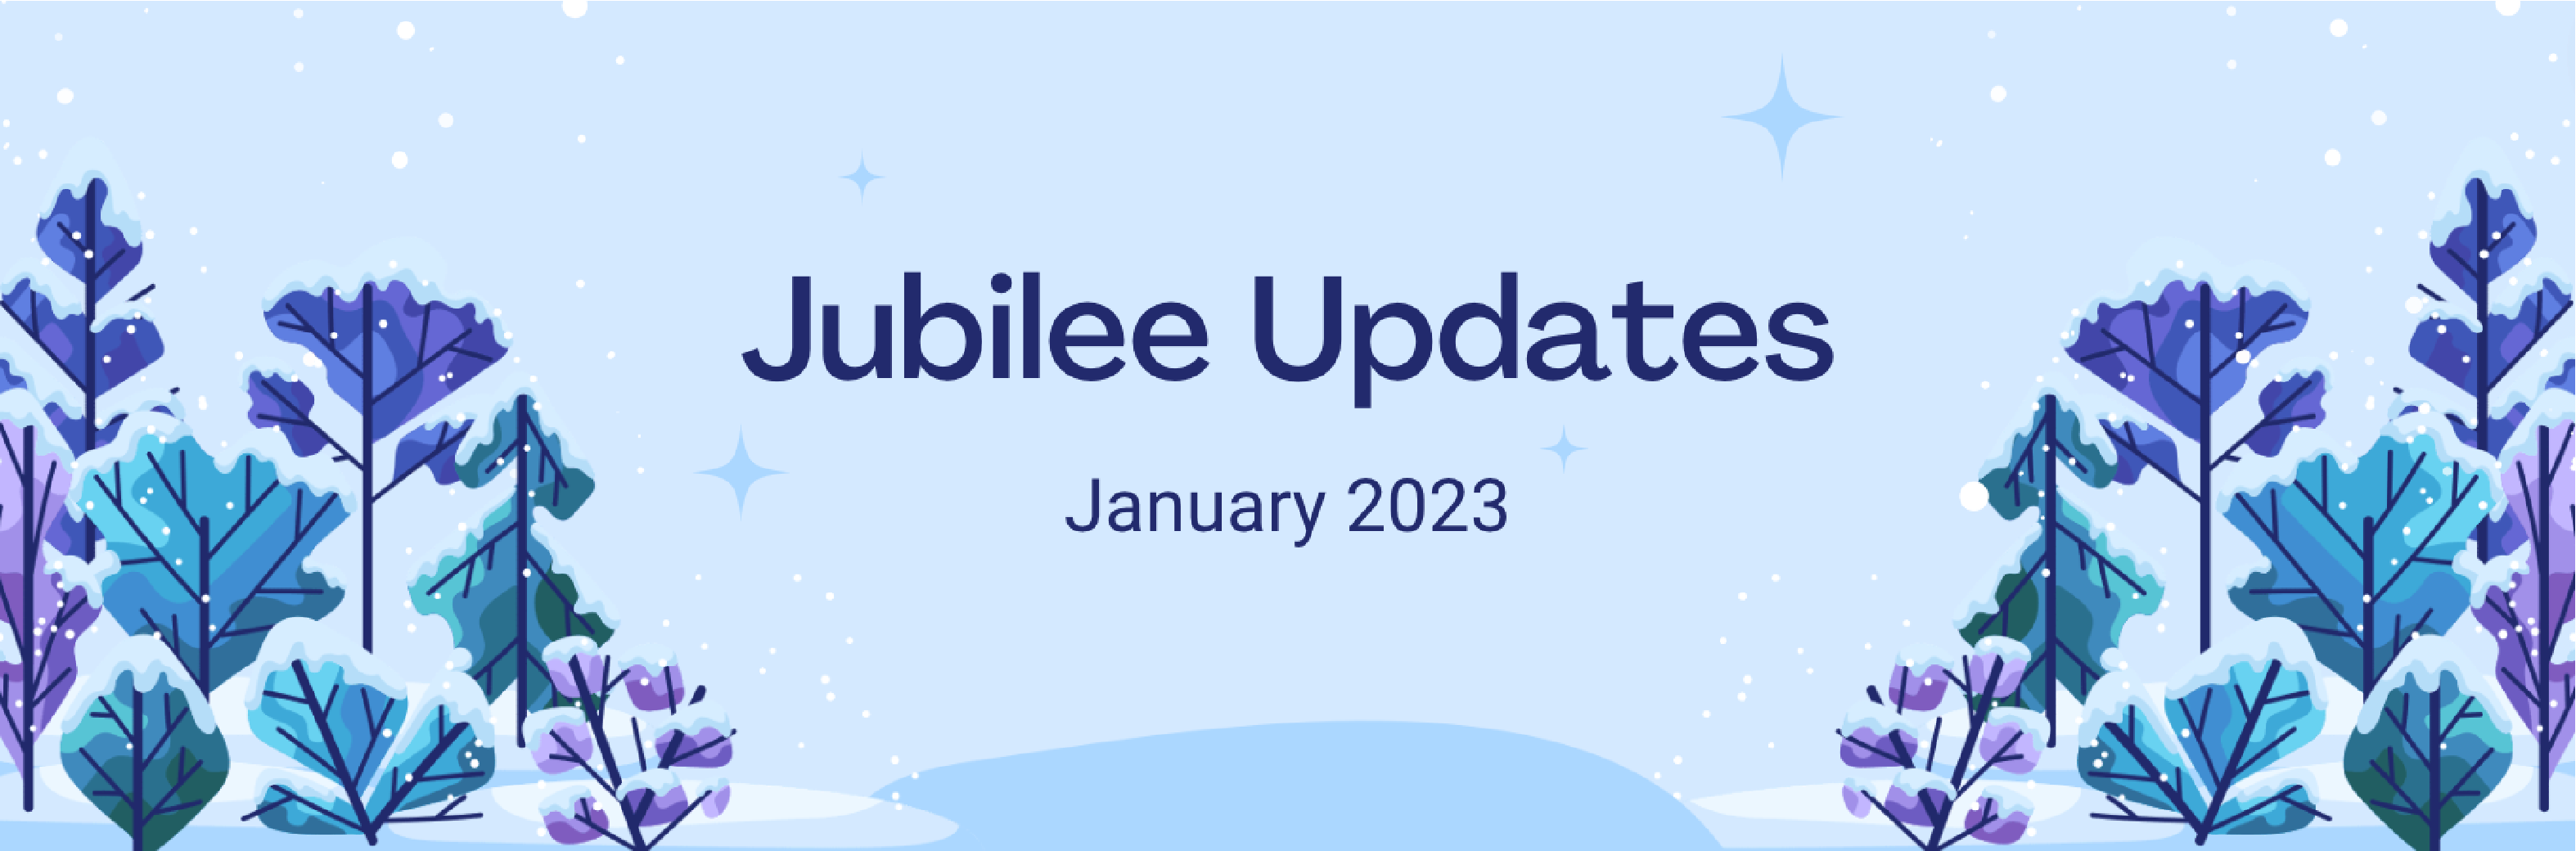 Jubilee updates - January 23